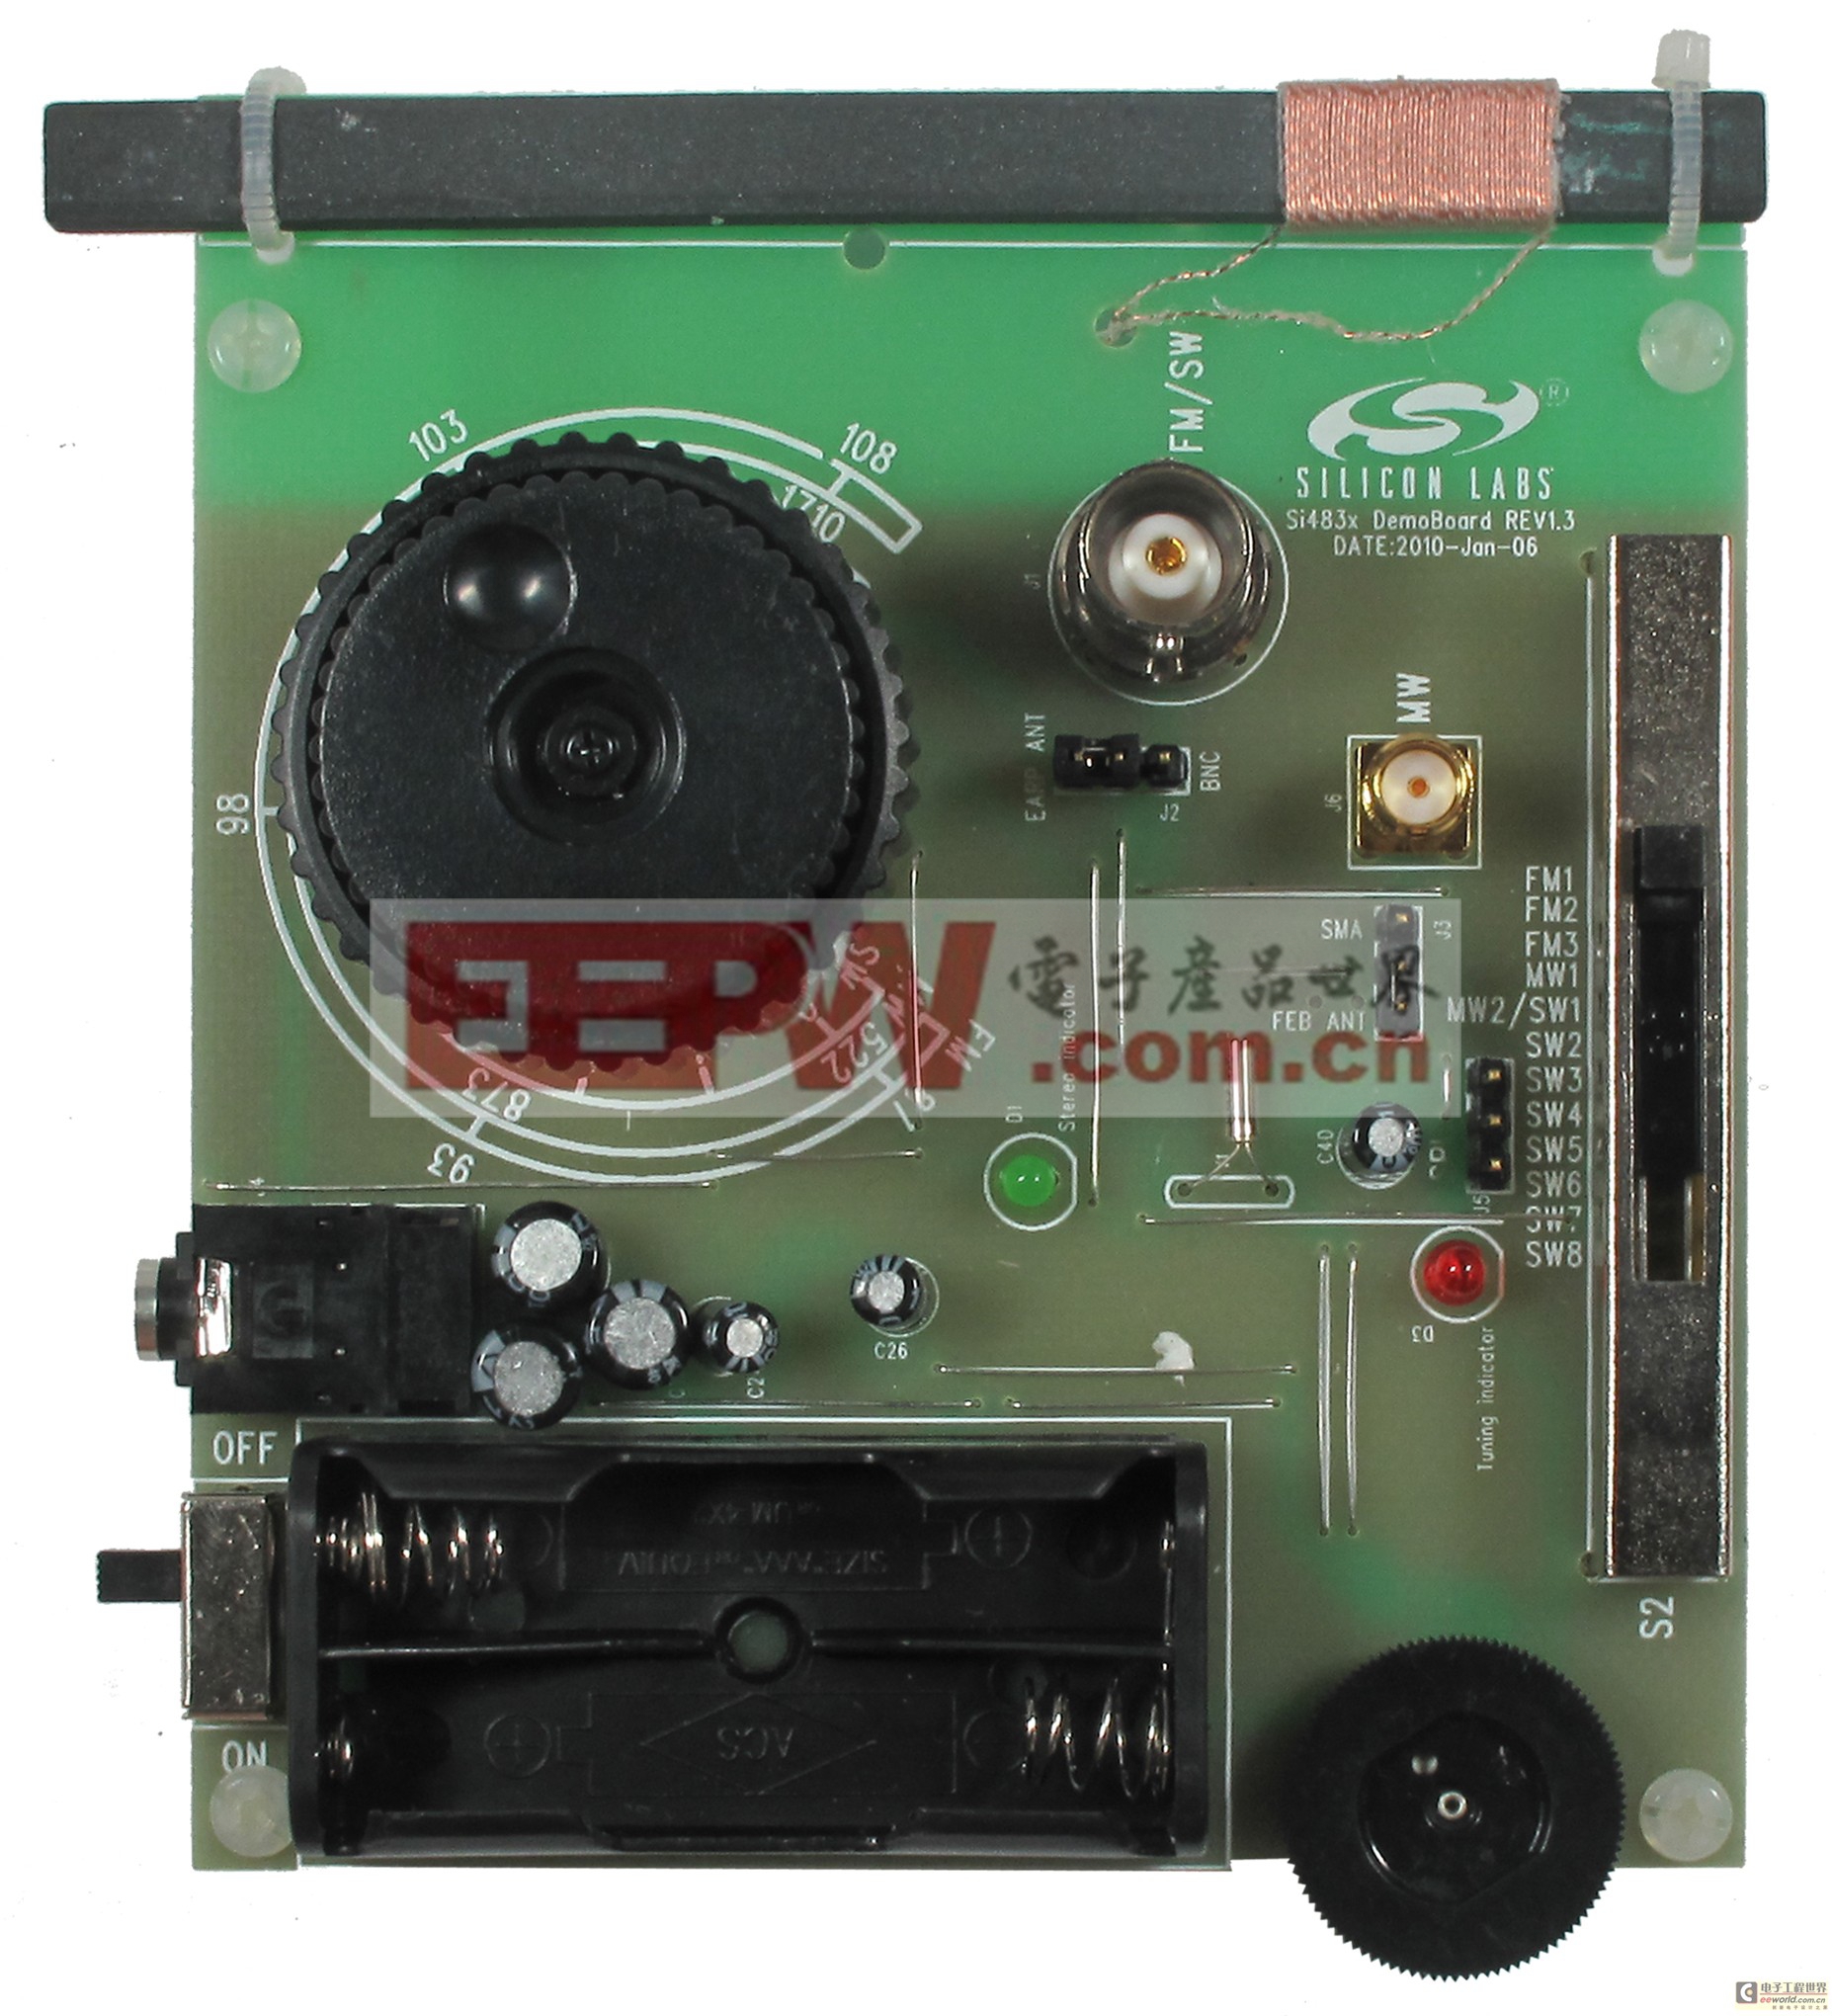 芯科AM/FM接收器芯片Si4830使模拟收音机具备数字化性